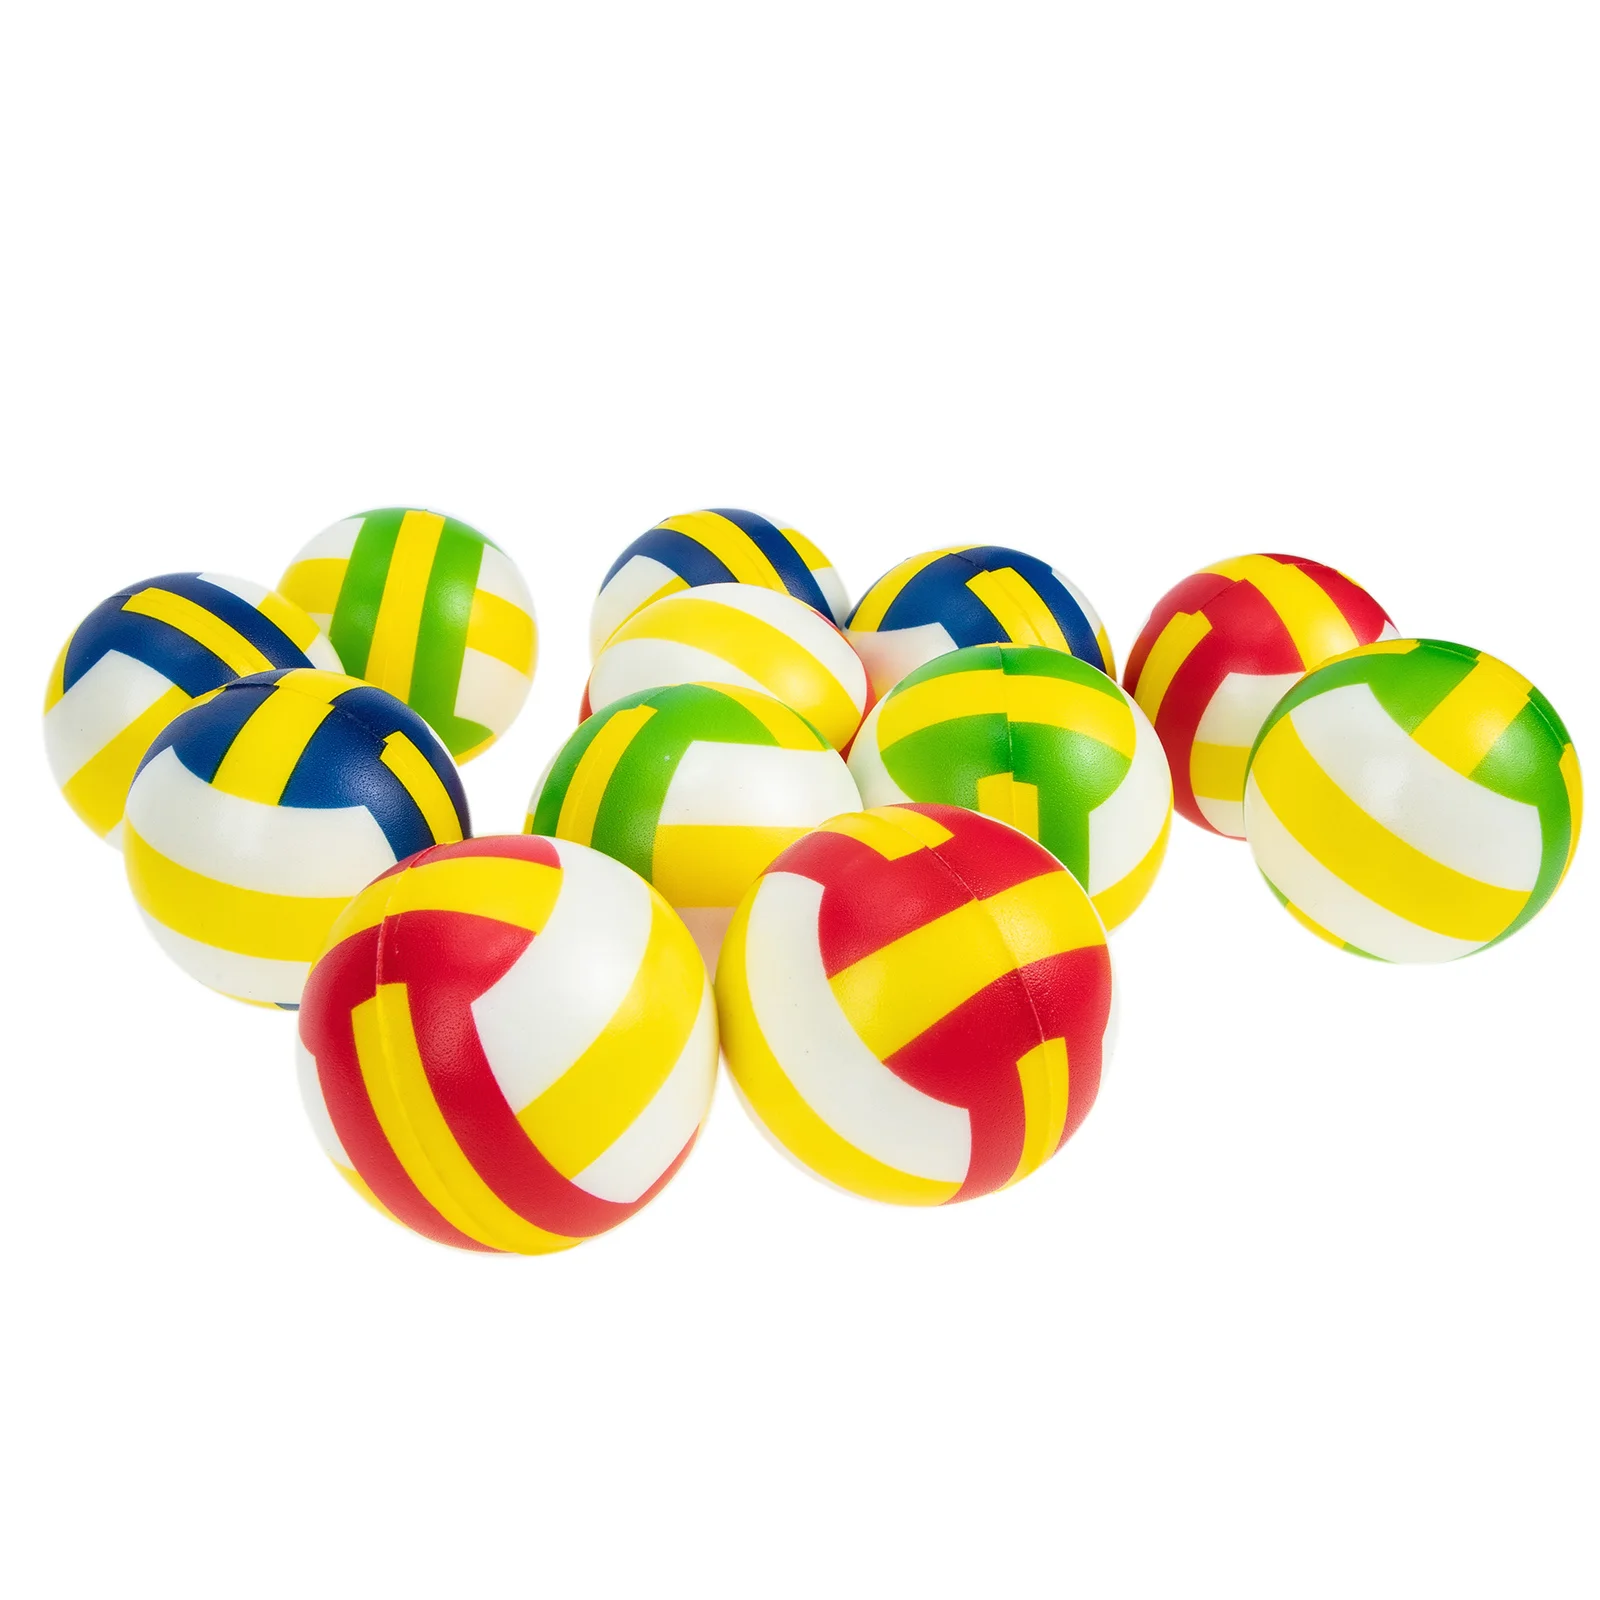 12 Шт Вентиляционный мяч Волейбольный Стресс-ребенок Детские Мини-игрушки Sensory Fidget Pu Портативная Декомпрессия